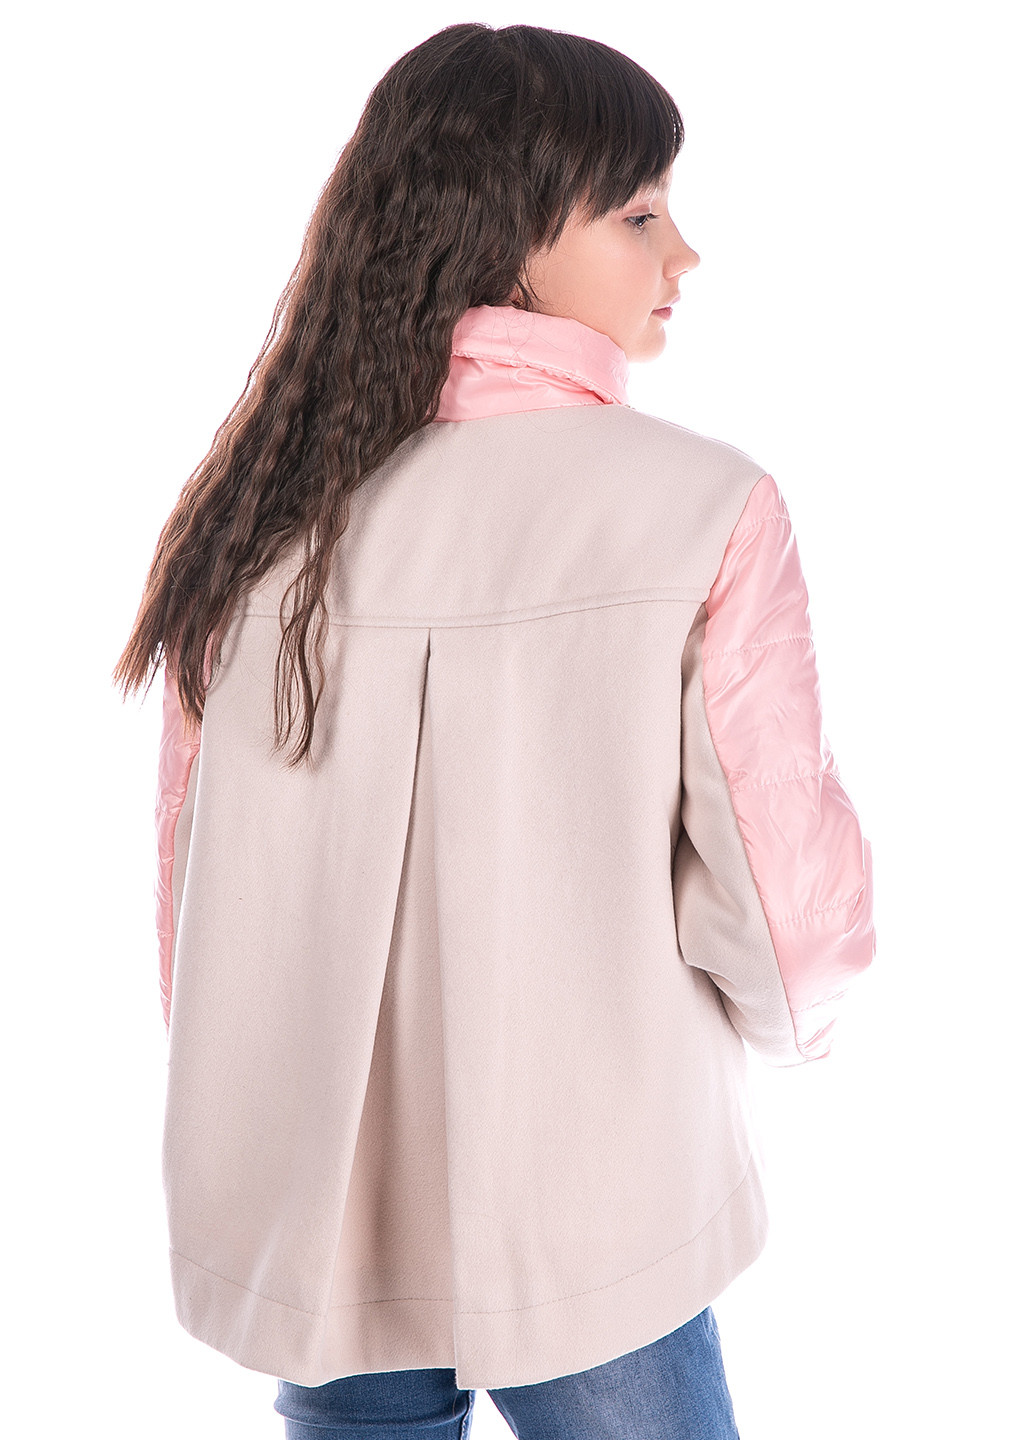 Розовая демисезонная детская демисезонная куртка-пальто цветы Zabavka